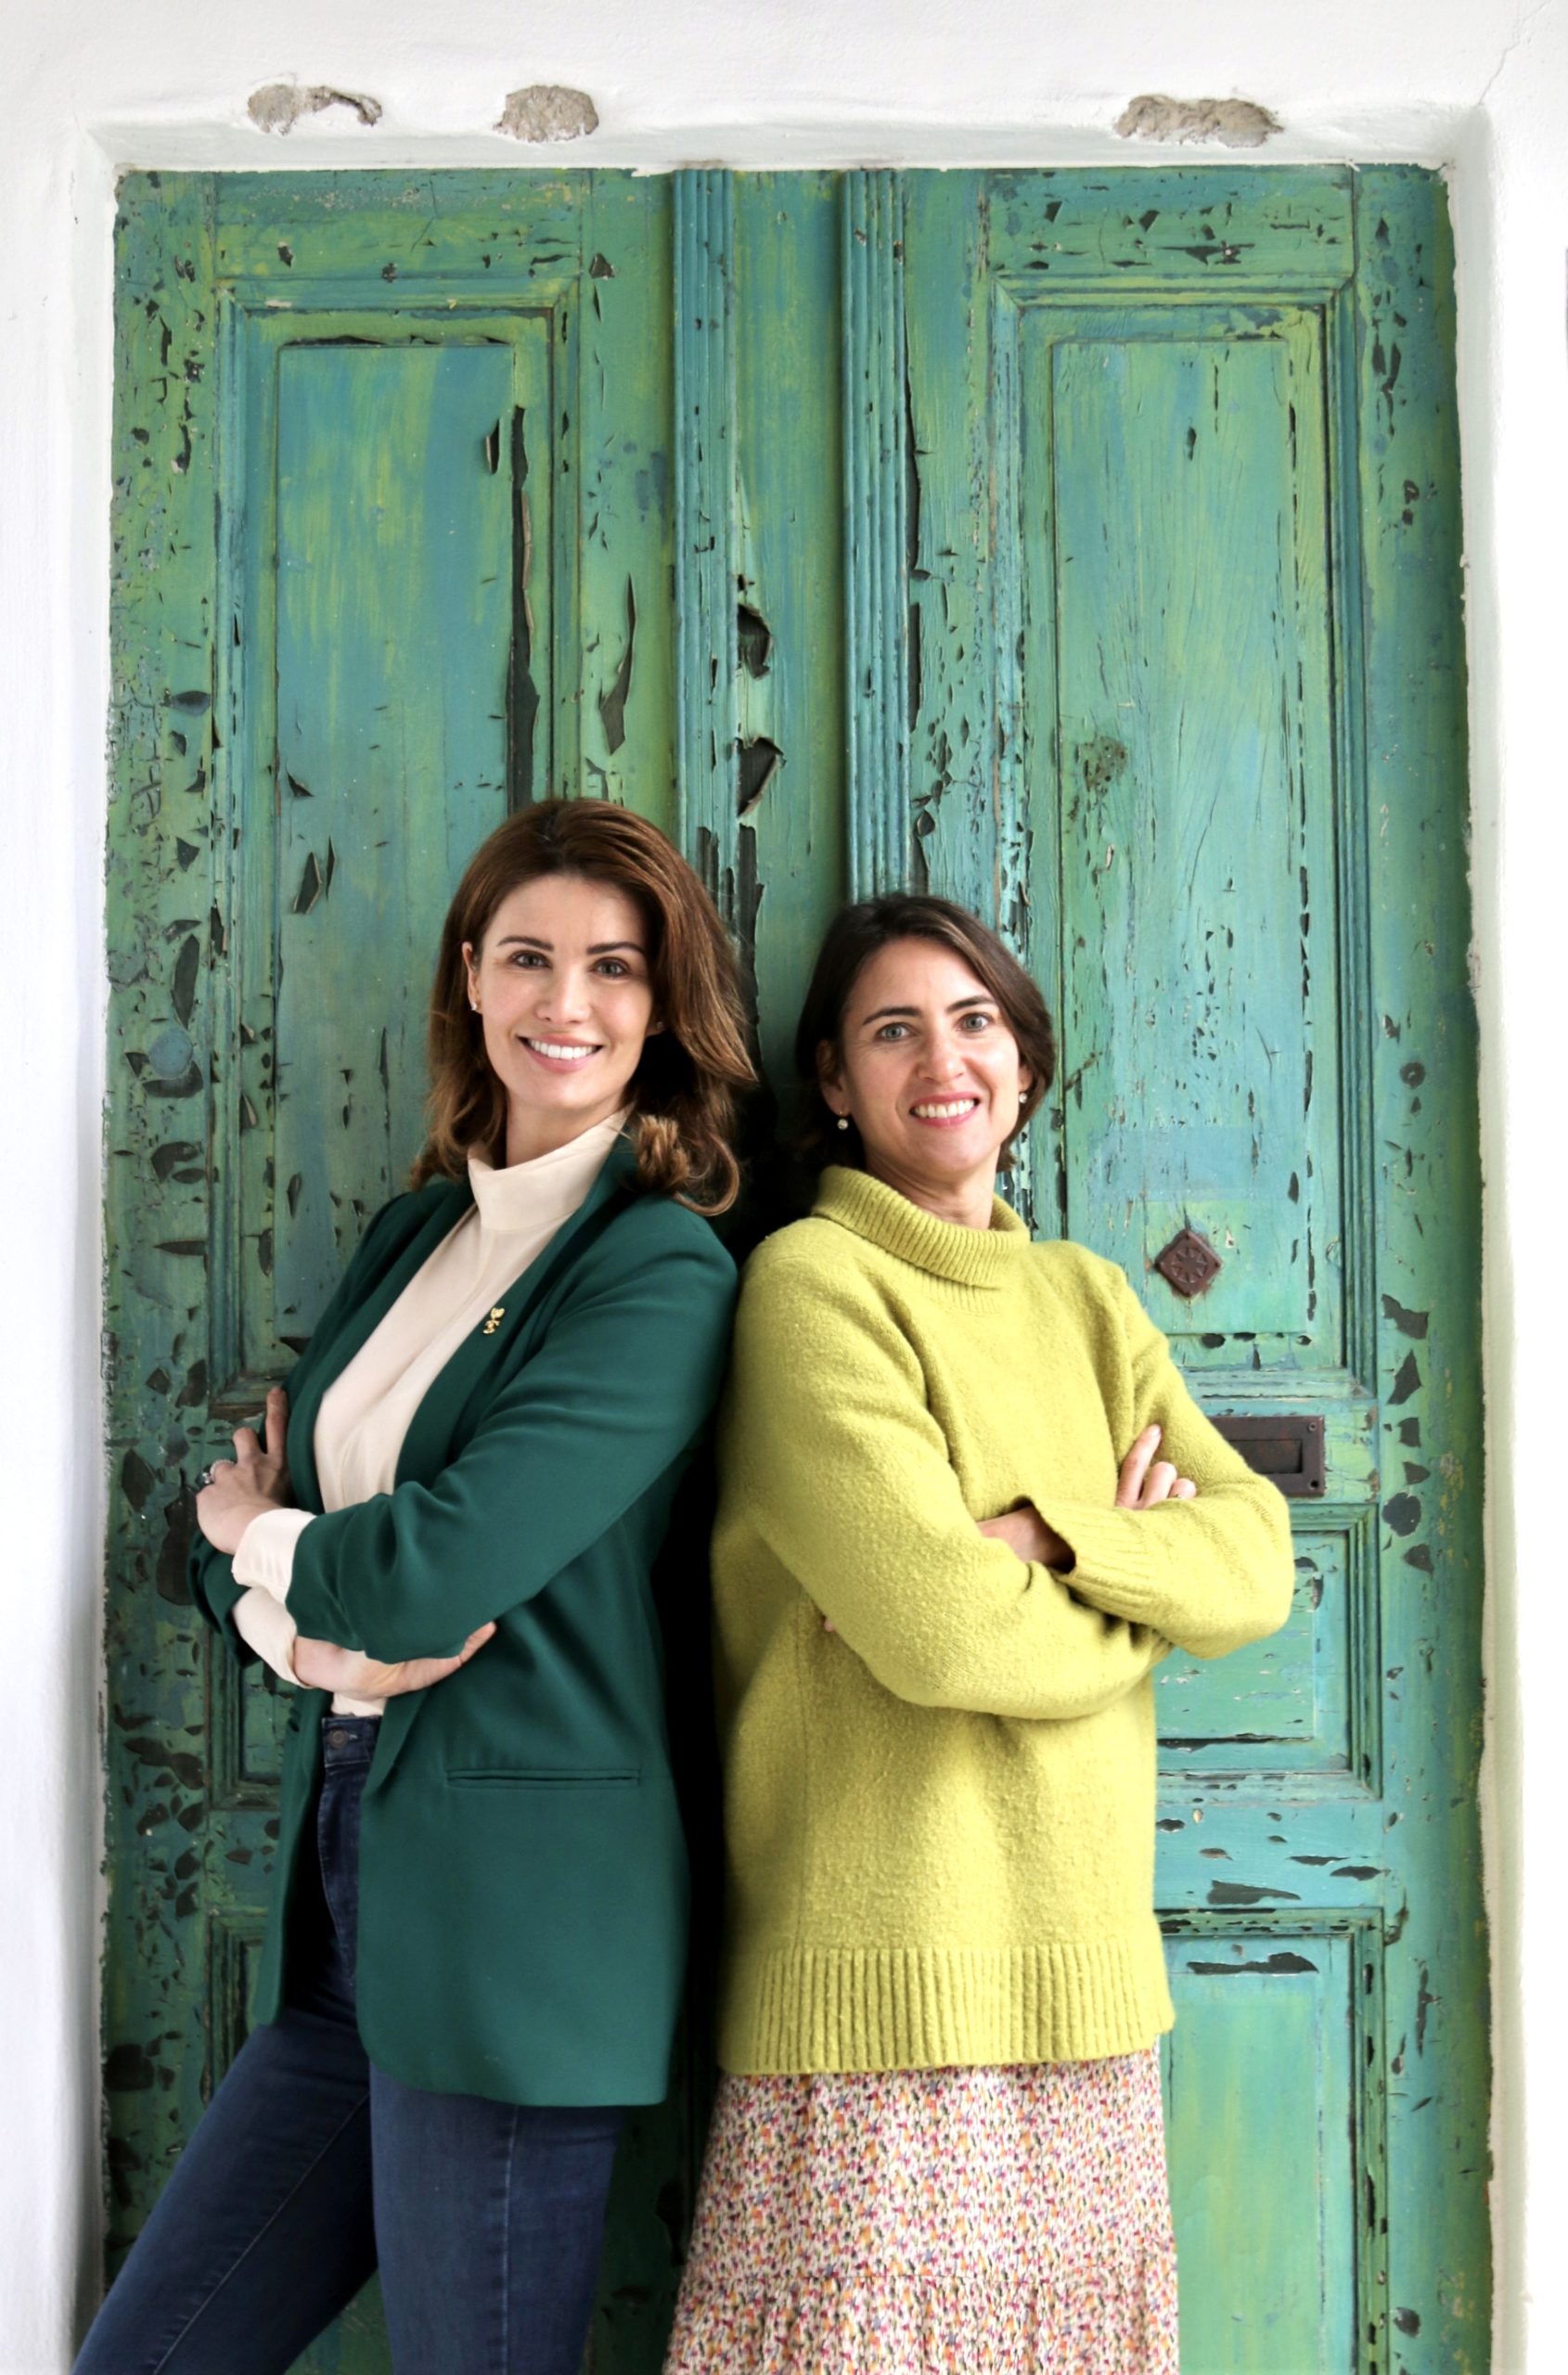 Das Team für Gesundheit im Europa-Park: Miriam Mack (l.) und Simone Bollian (r.)